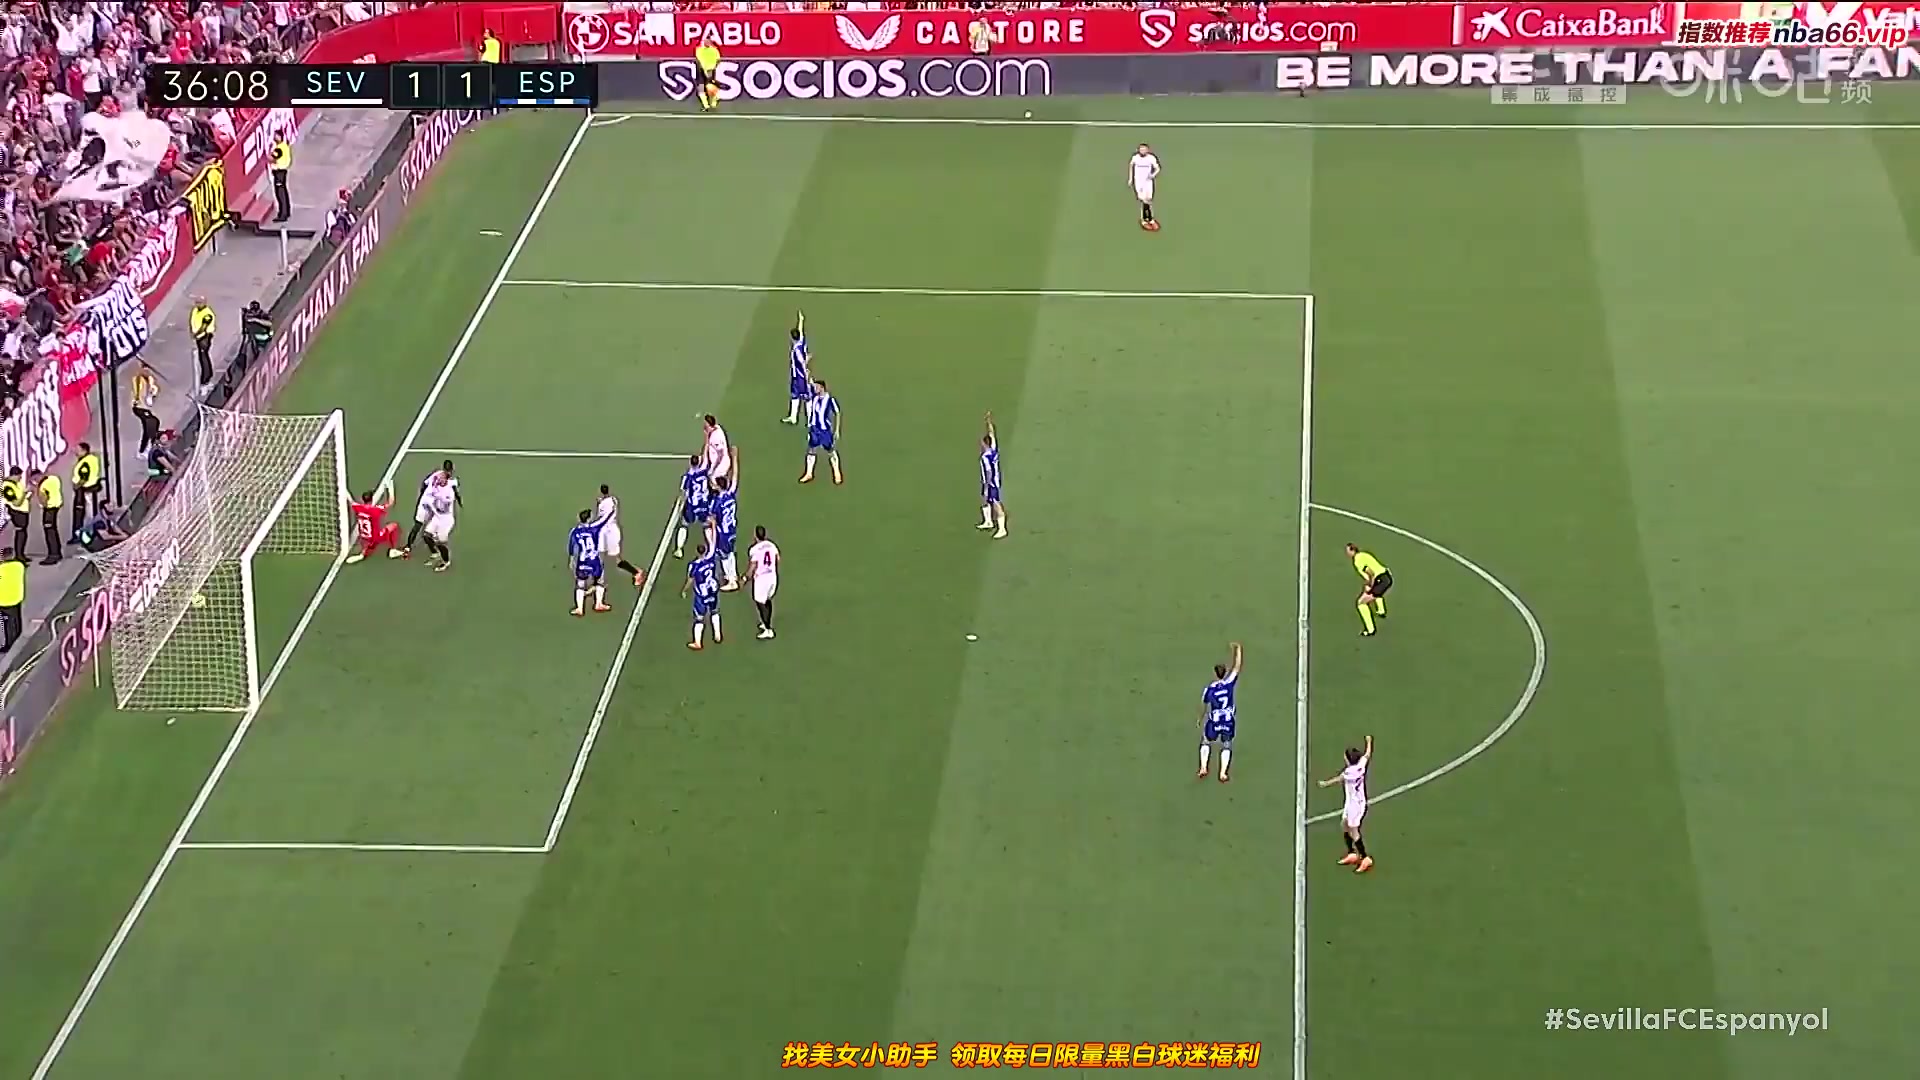 Laliga1 Sevilla Vs RCD Espanyol  Goal in 35 min, Score 2:1